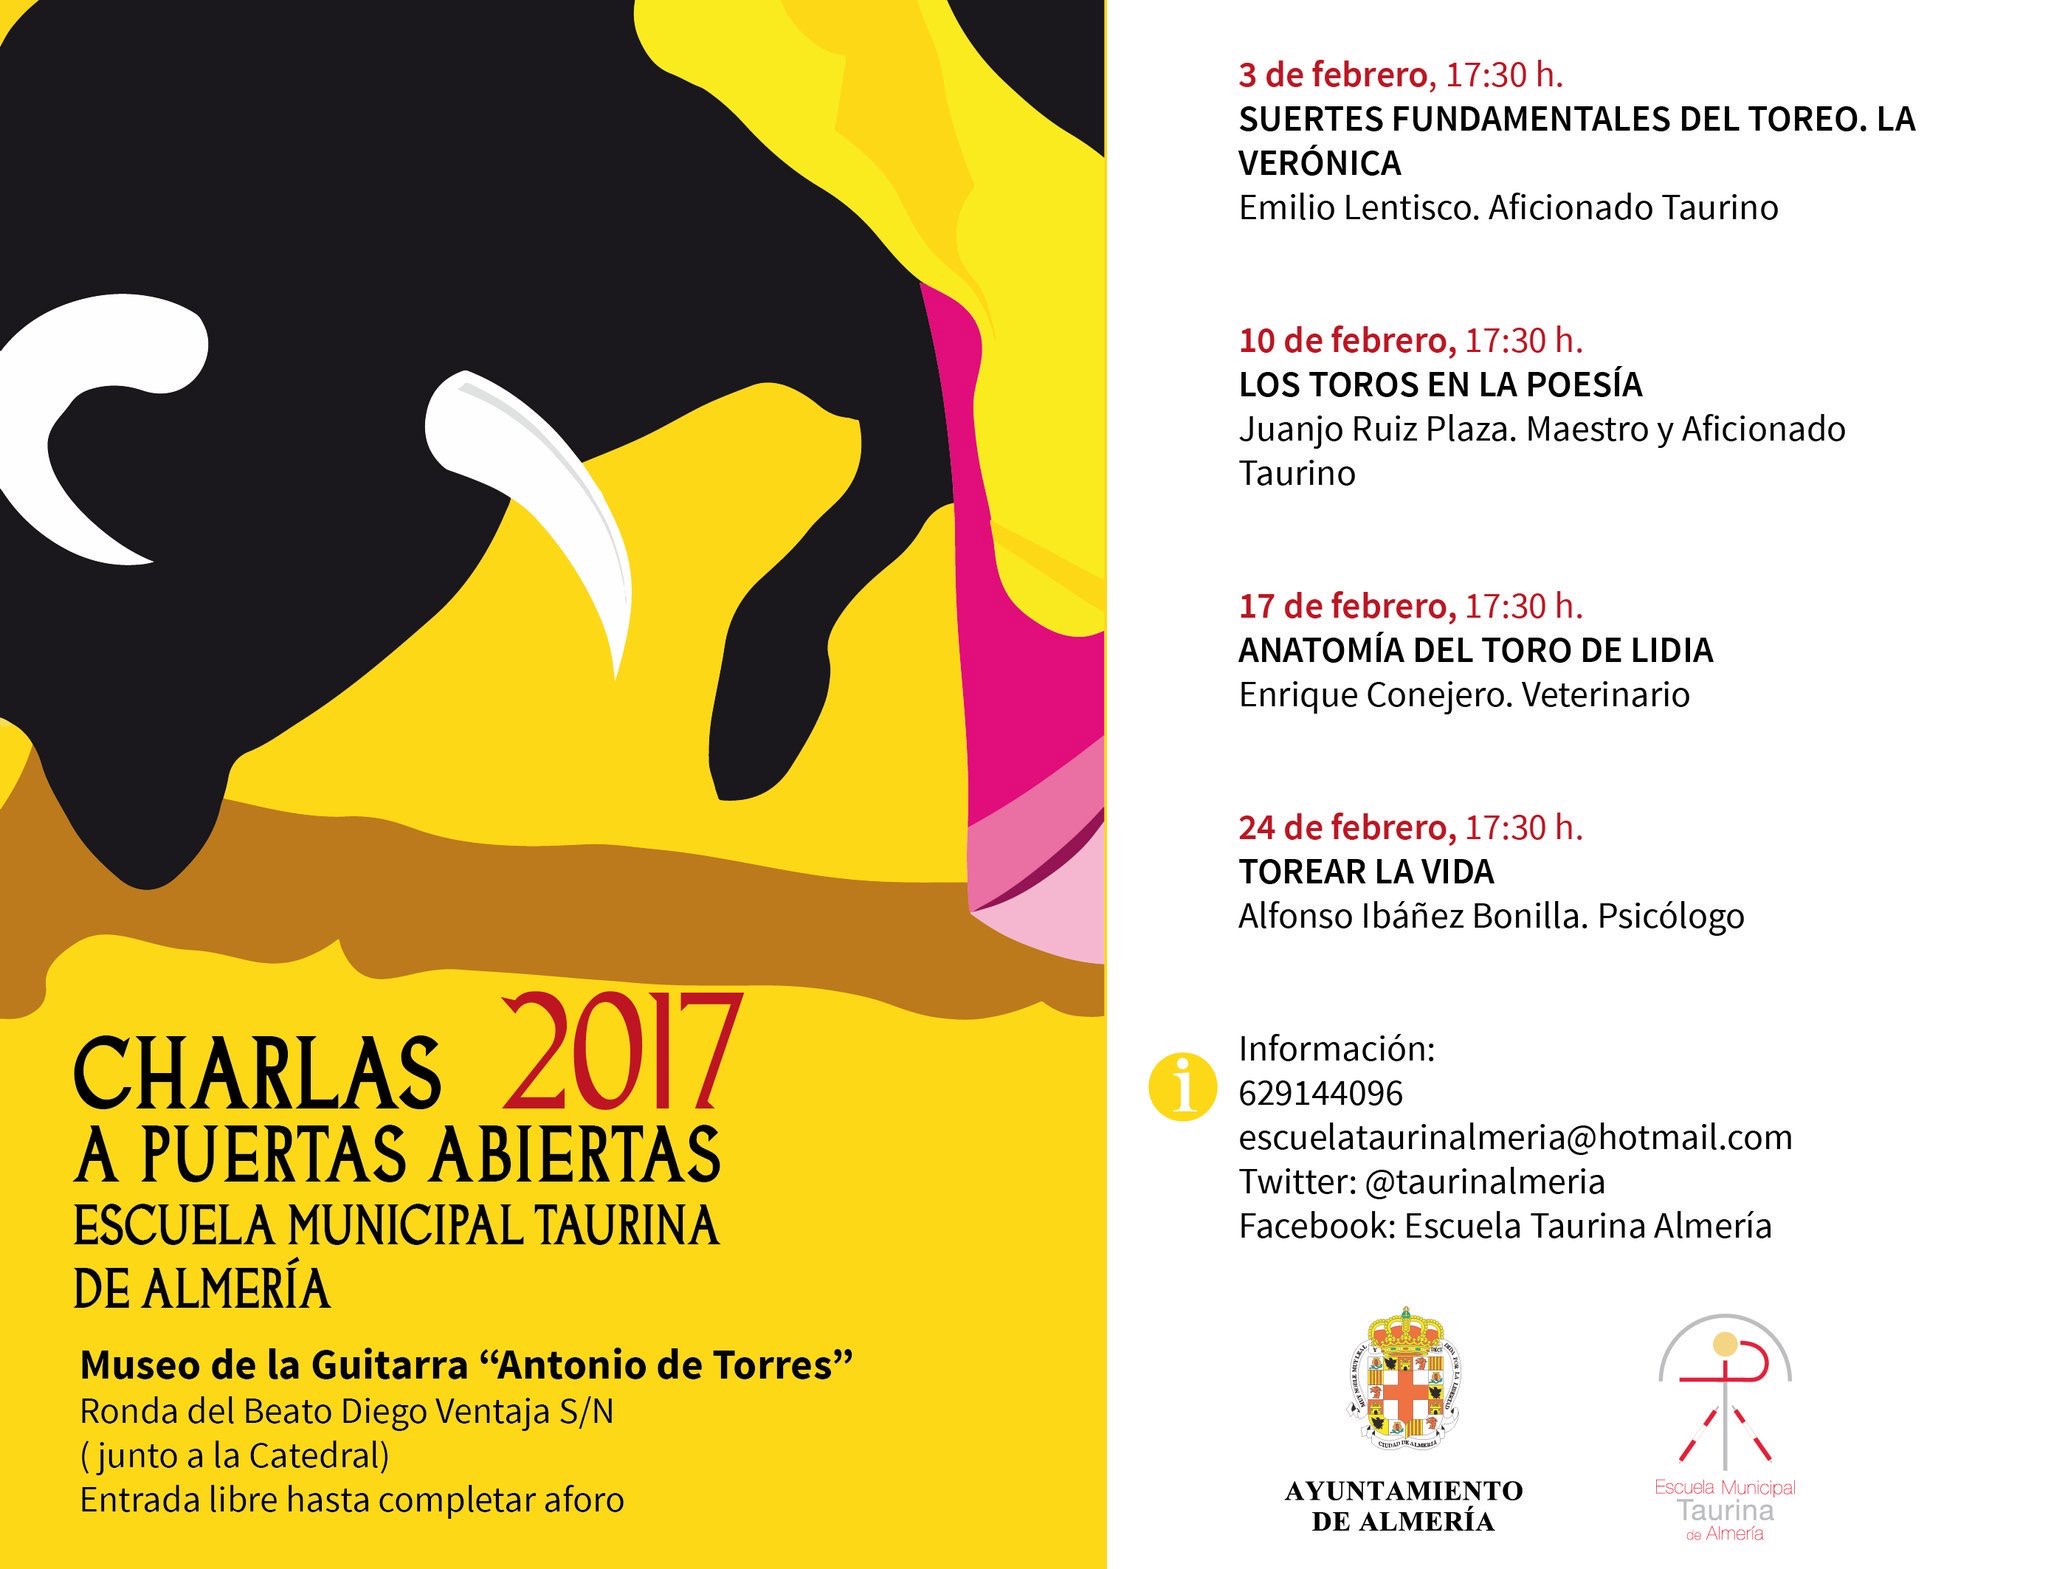 Escuela Taurina de Almería - Charlas Puertas Abiertas 2017 